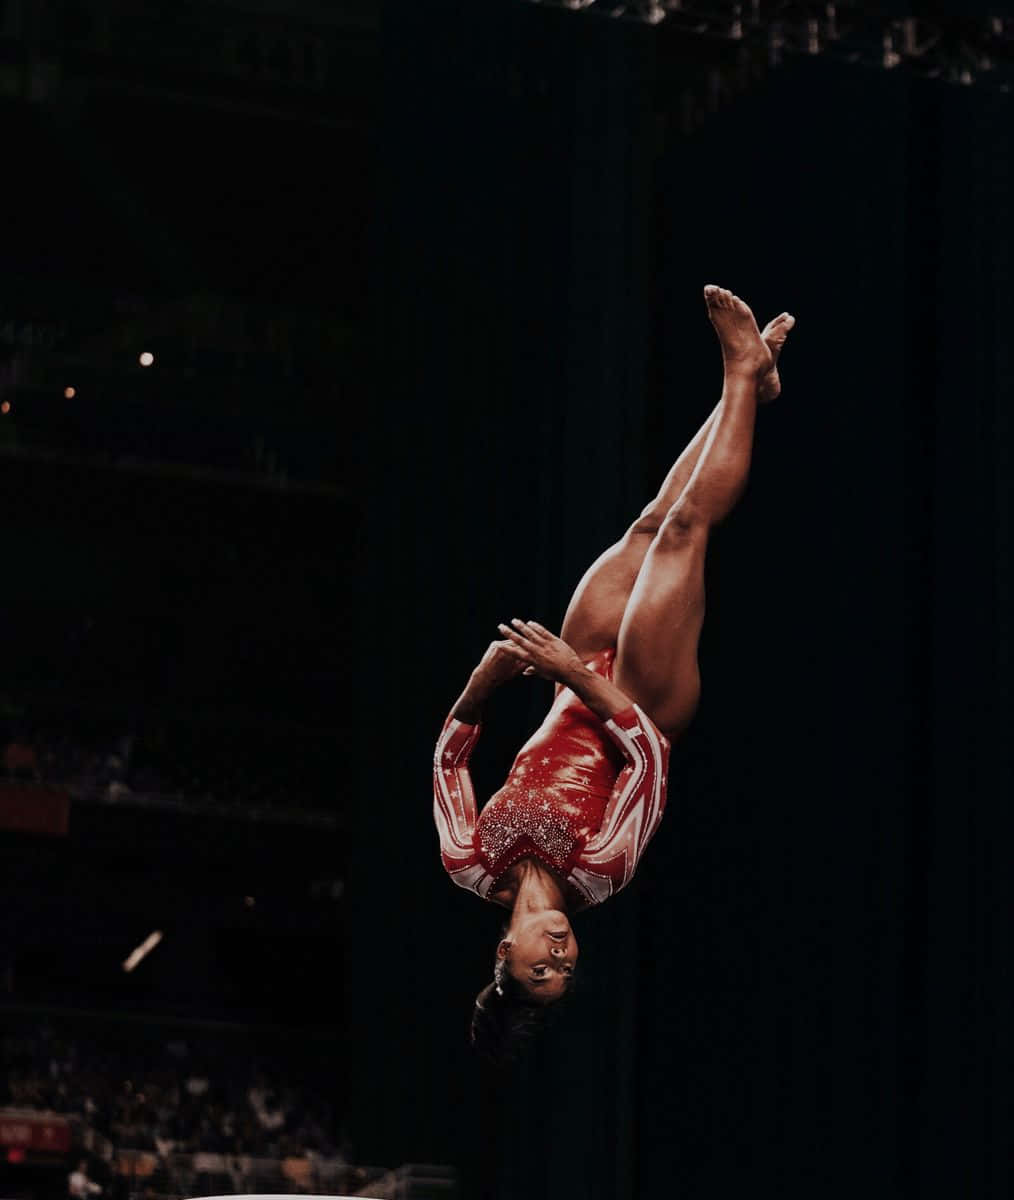 A gymnast shows her strength during an aerial maneuver